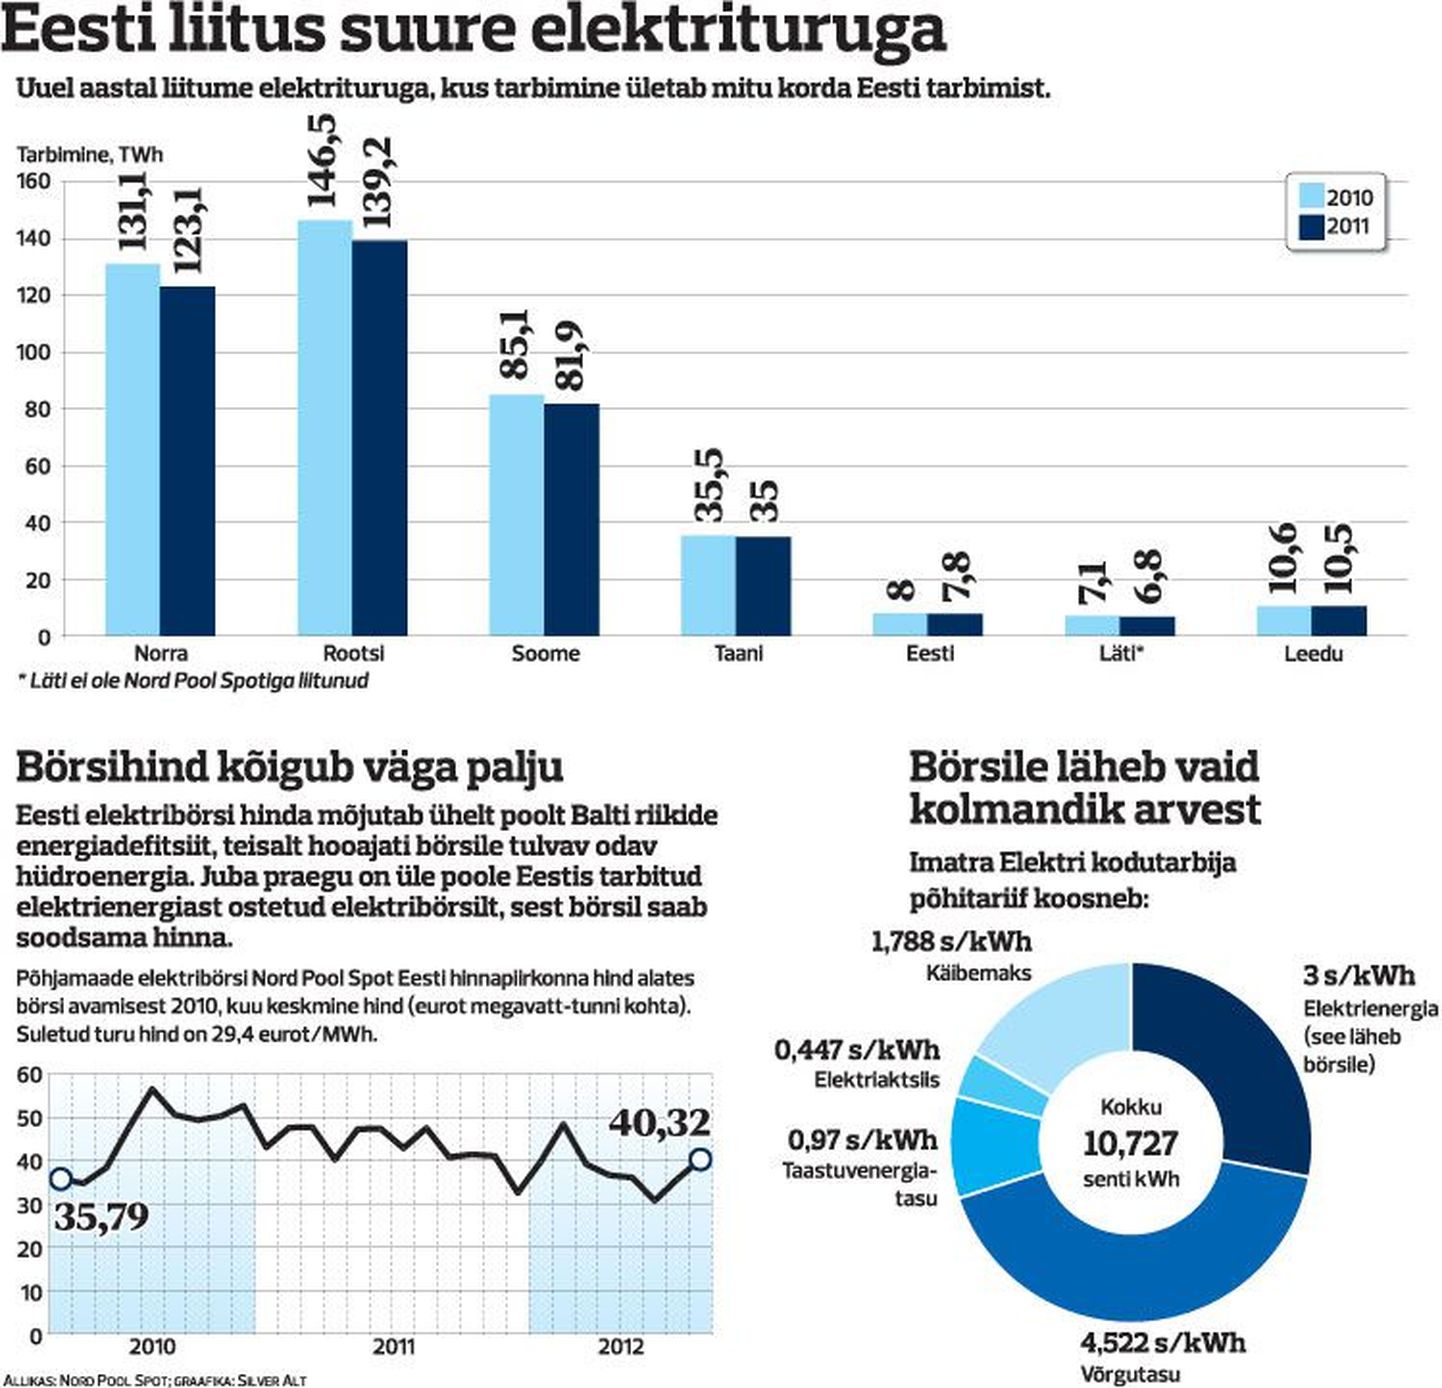 Eesti liitus suure elektrituruga.